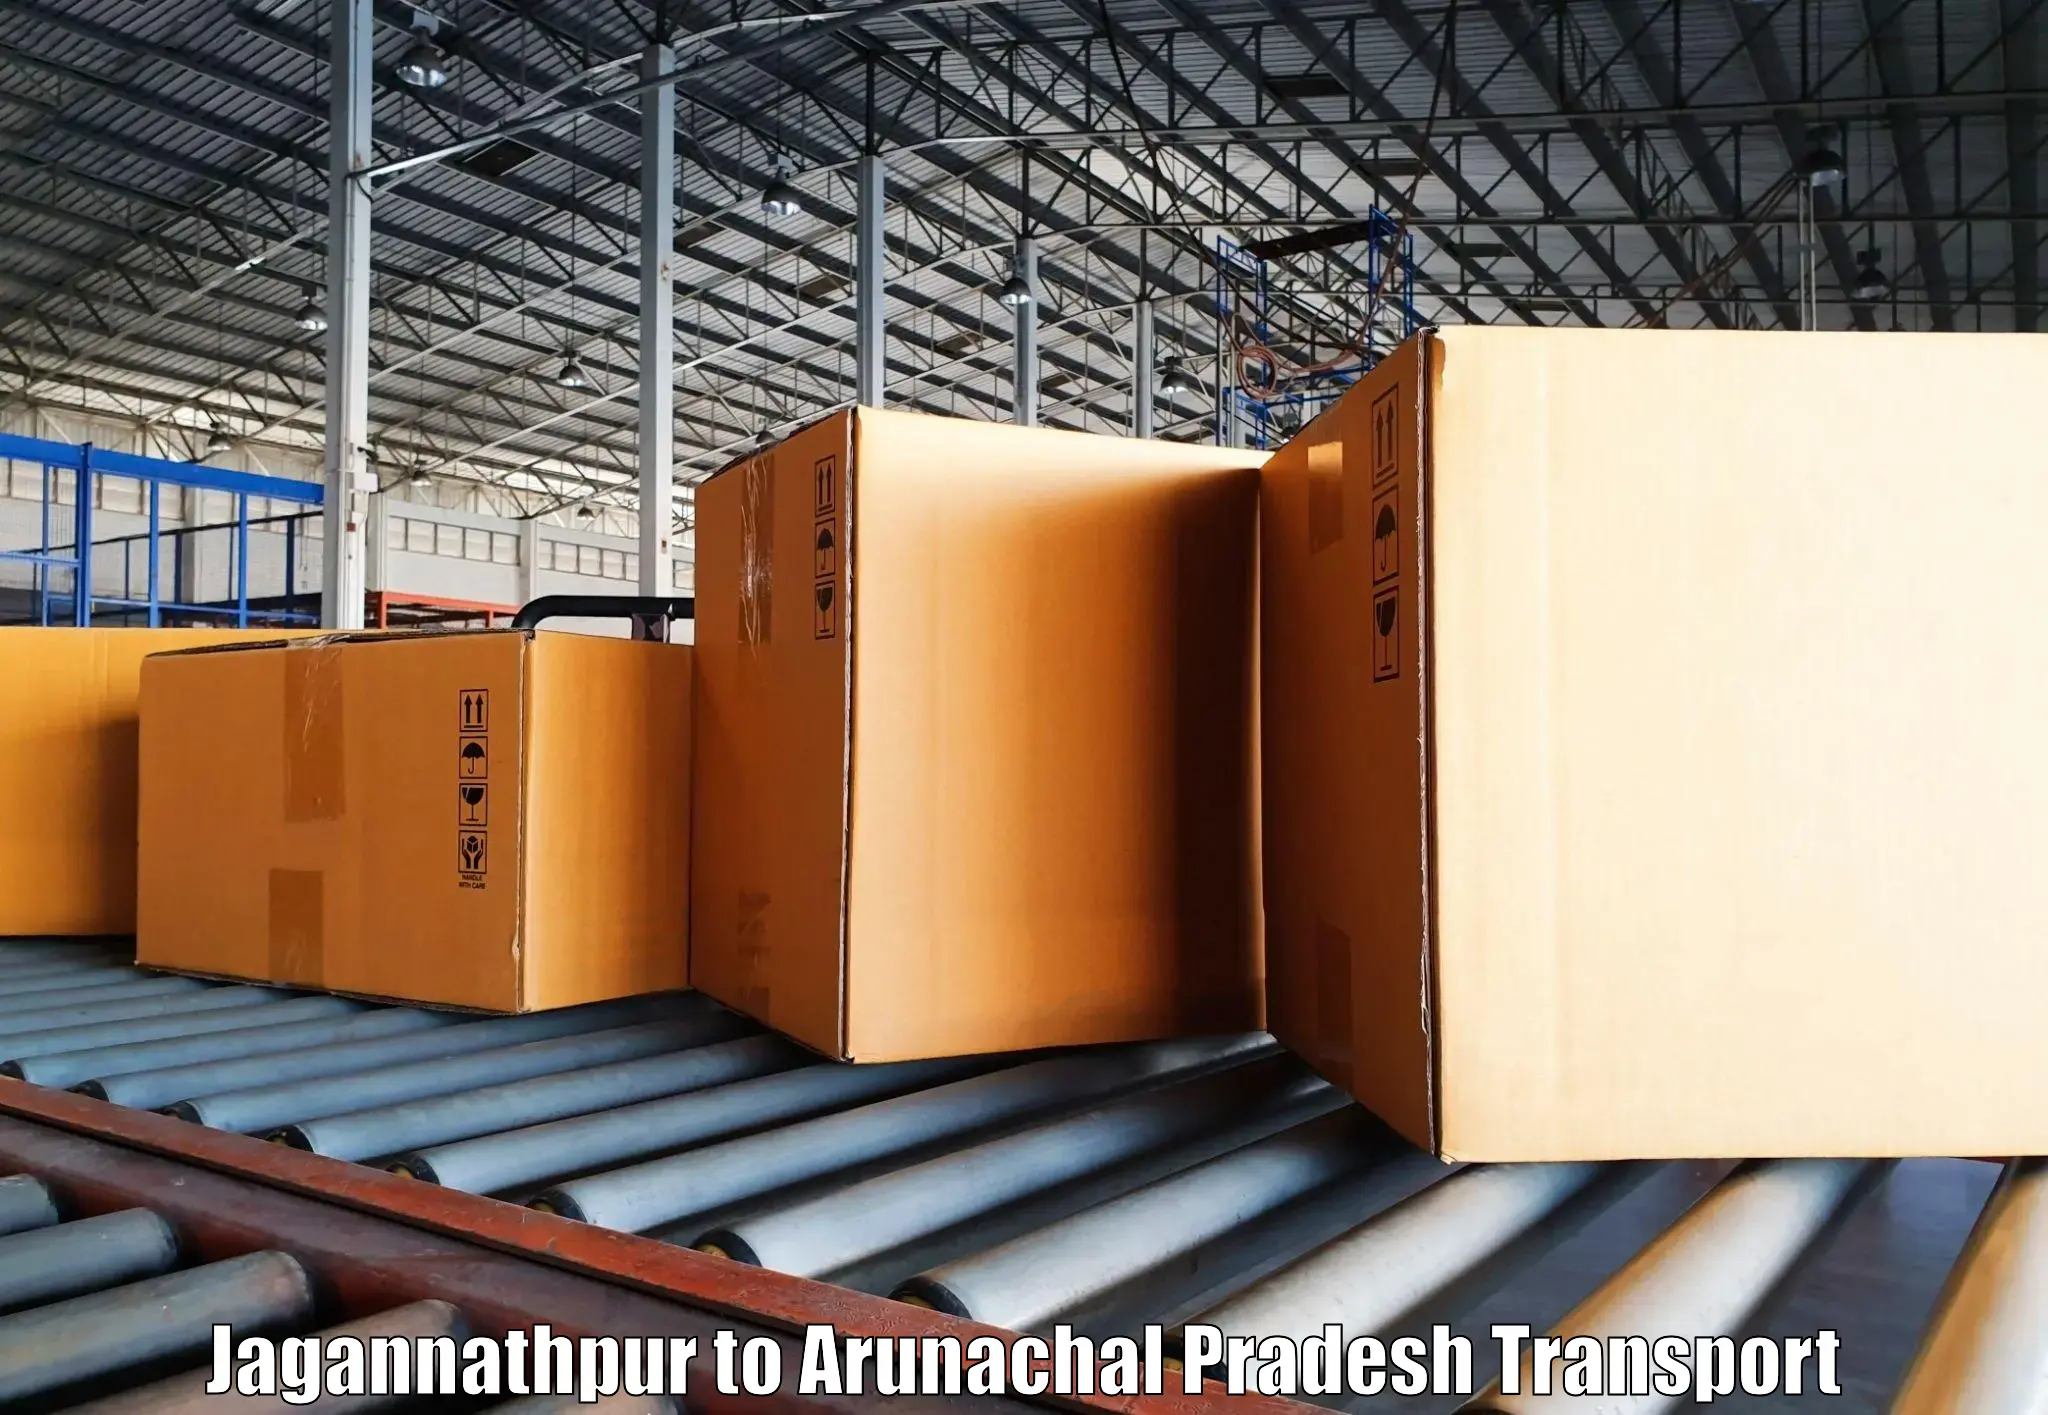 Two wheeler parcel service Jagannathpur to Arunachal Pradesh